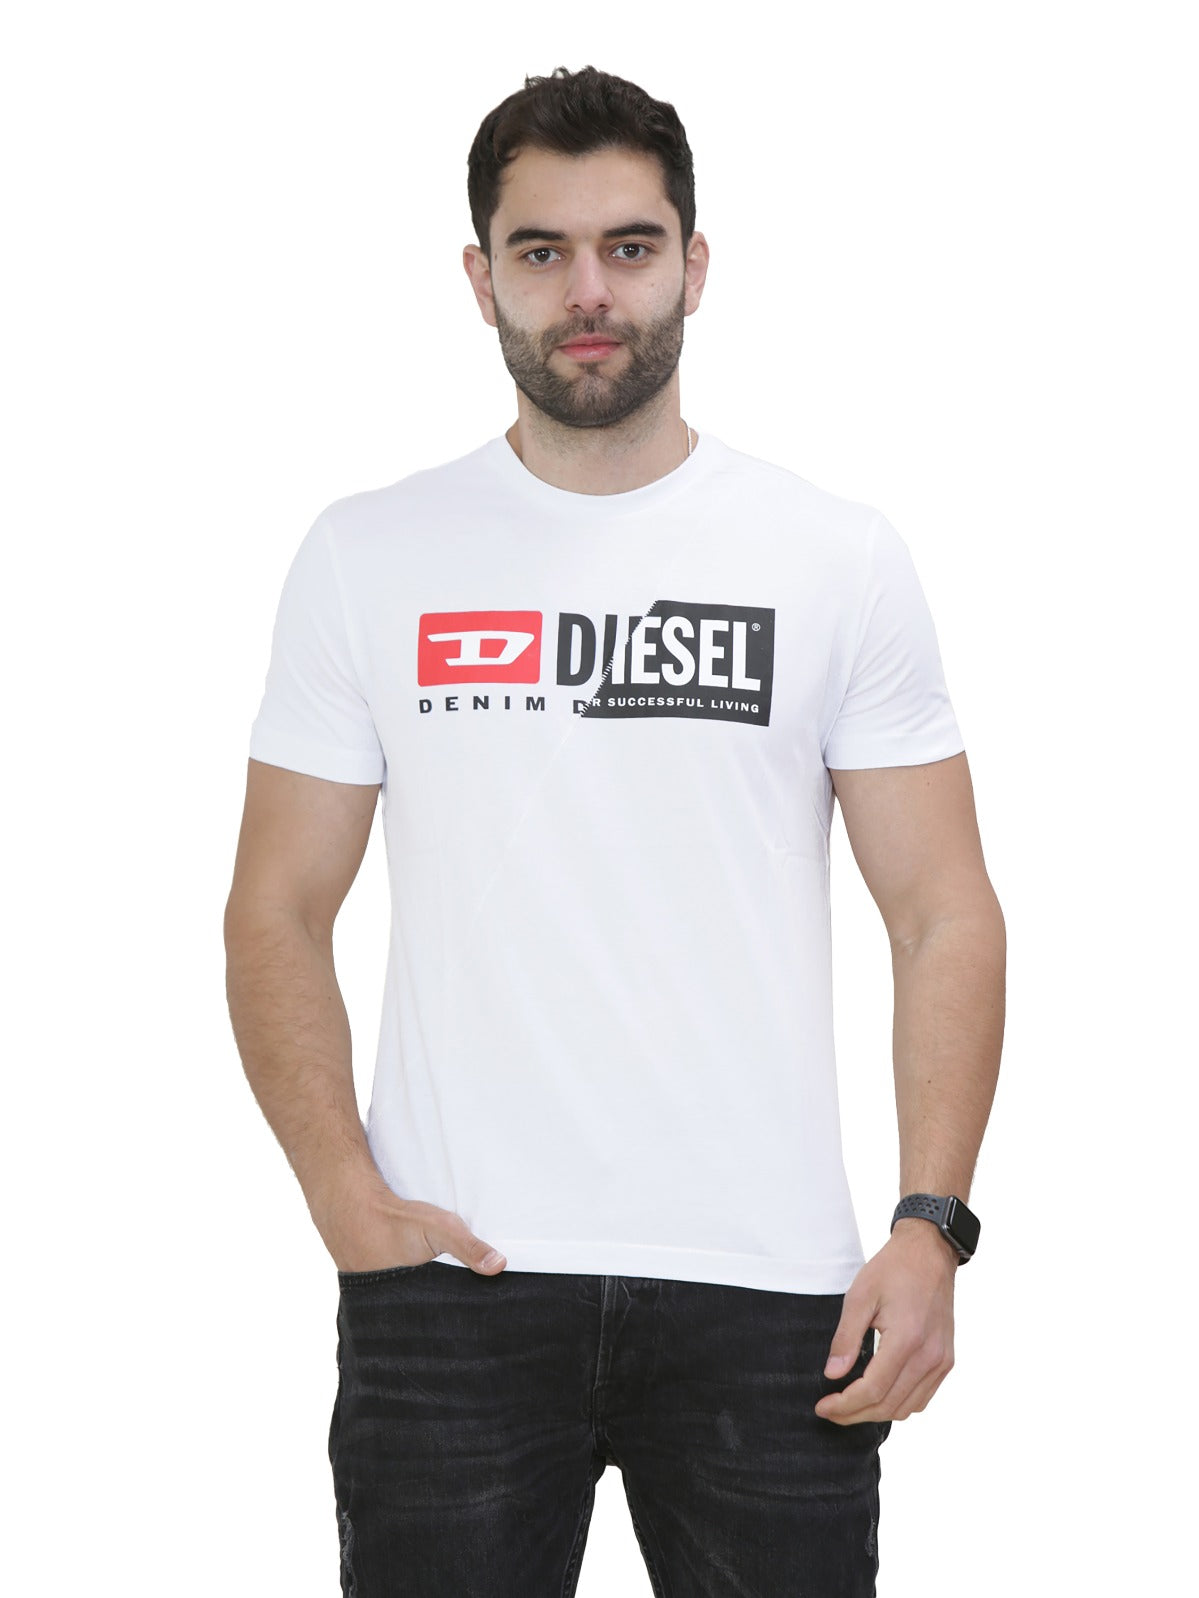 DIESEL CUTY Mens Short Sleeve Printed Deisel Cuty T-shirt DIESEL RAWDENIM